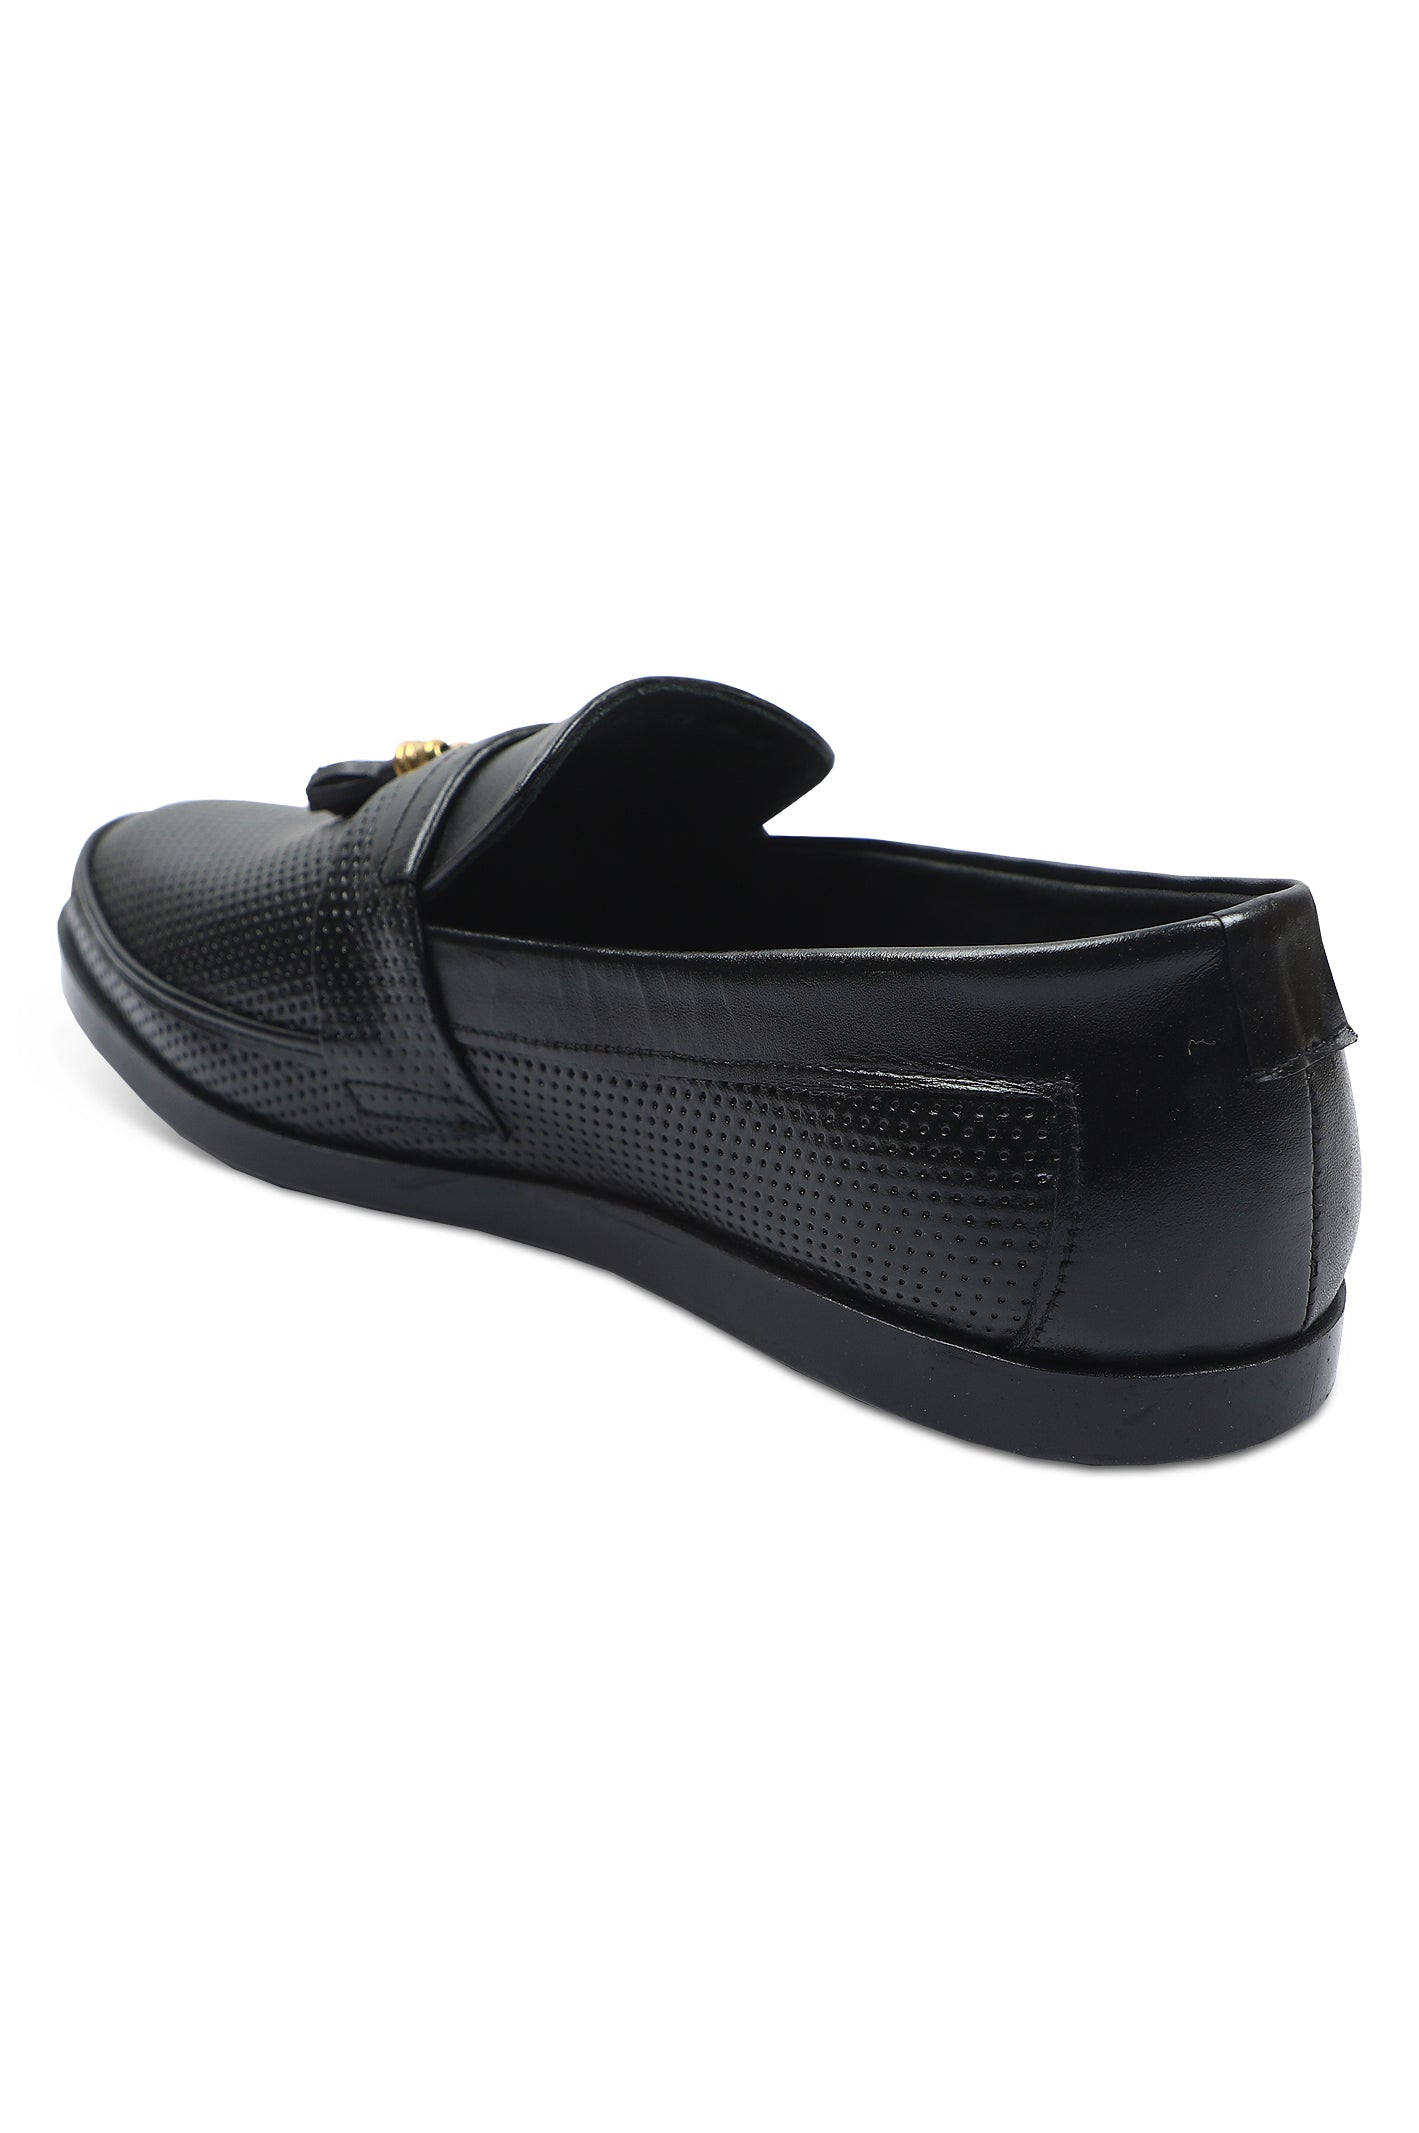 Formal Shoes For Men in Black SKU: SMF-0209-BLACK - Diners